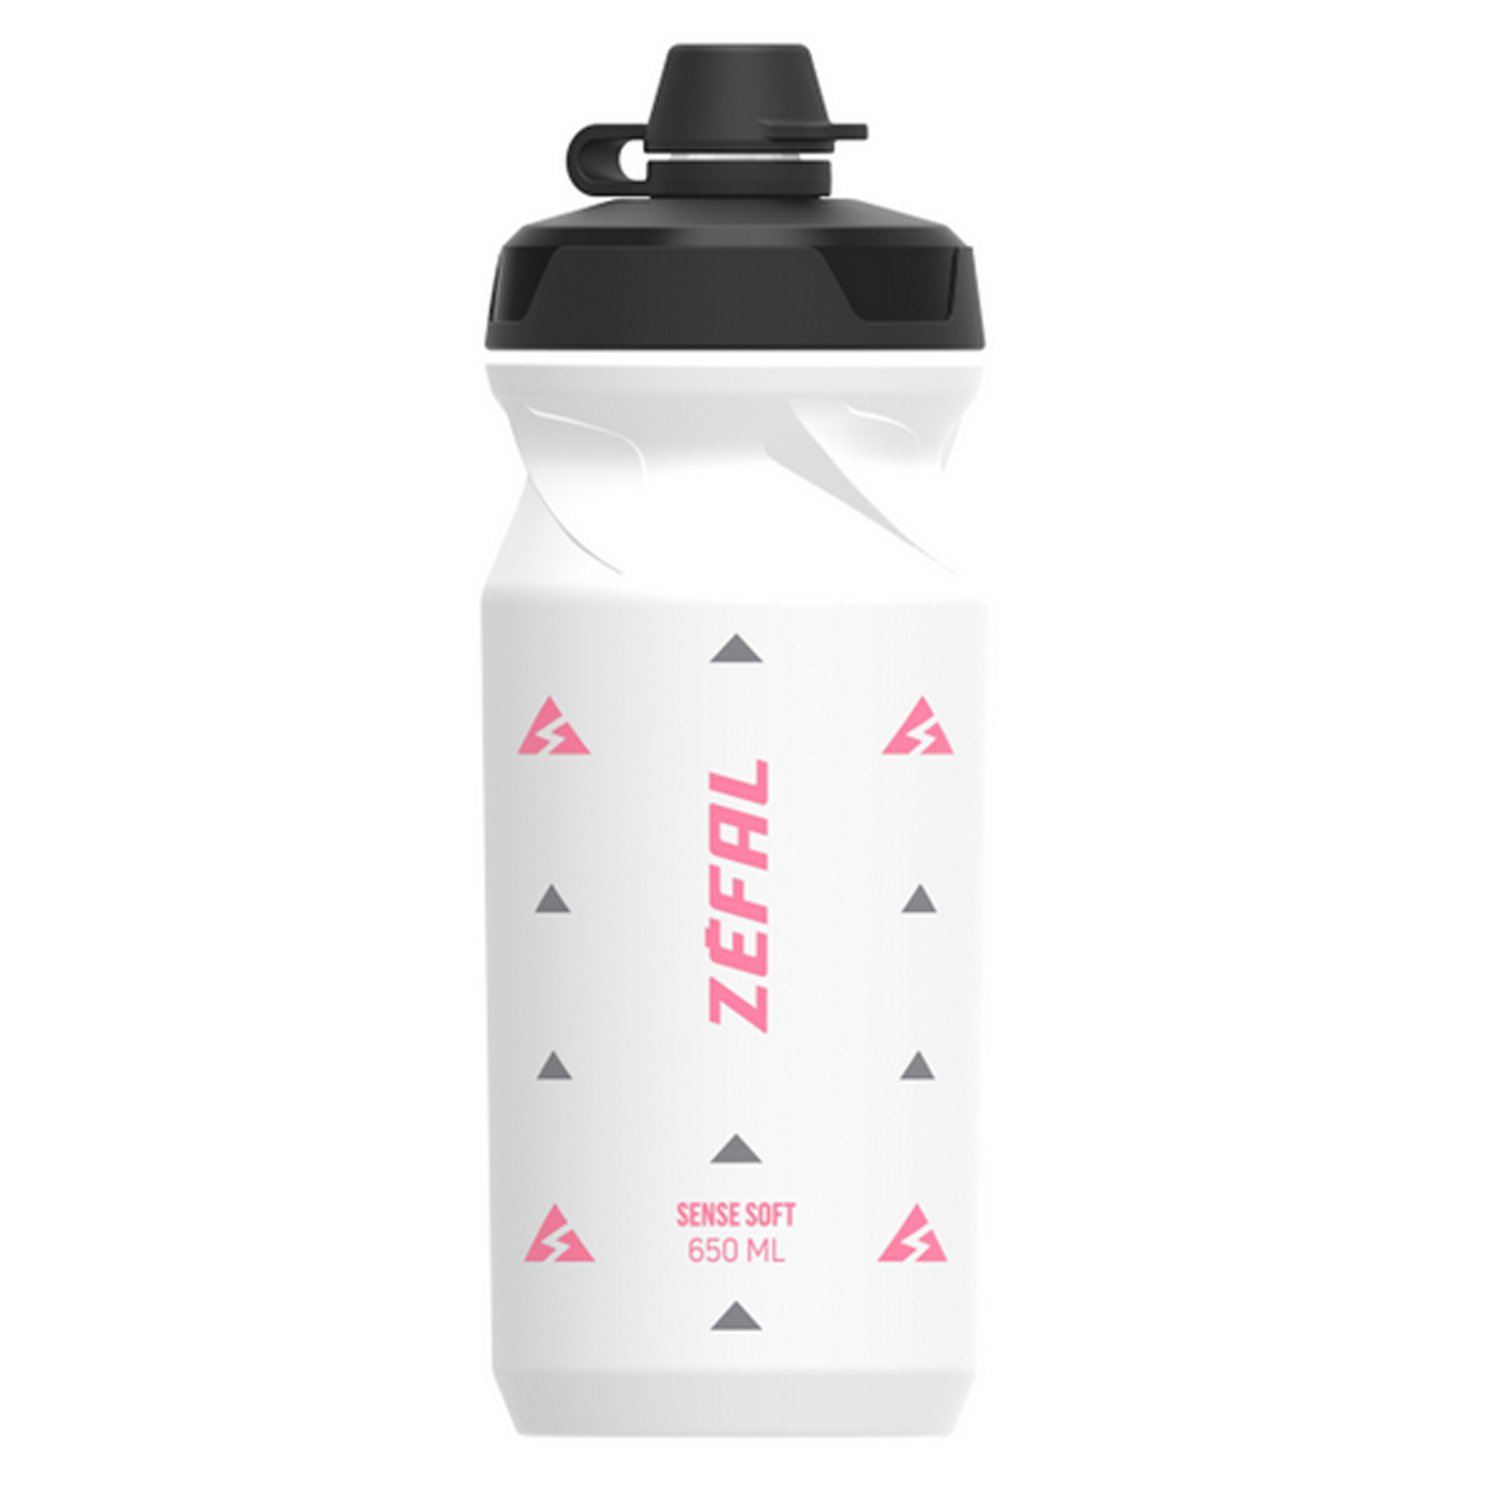 Фляга велосипедная Zefal Sense Soft 65 No-Mud Bottle, пластик, 650 мл, белый/розовый, 2023, 155R фляга велосипедная zefal sense soft 80 bottle translucent пластик 800 мл синий 2023 157l